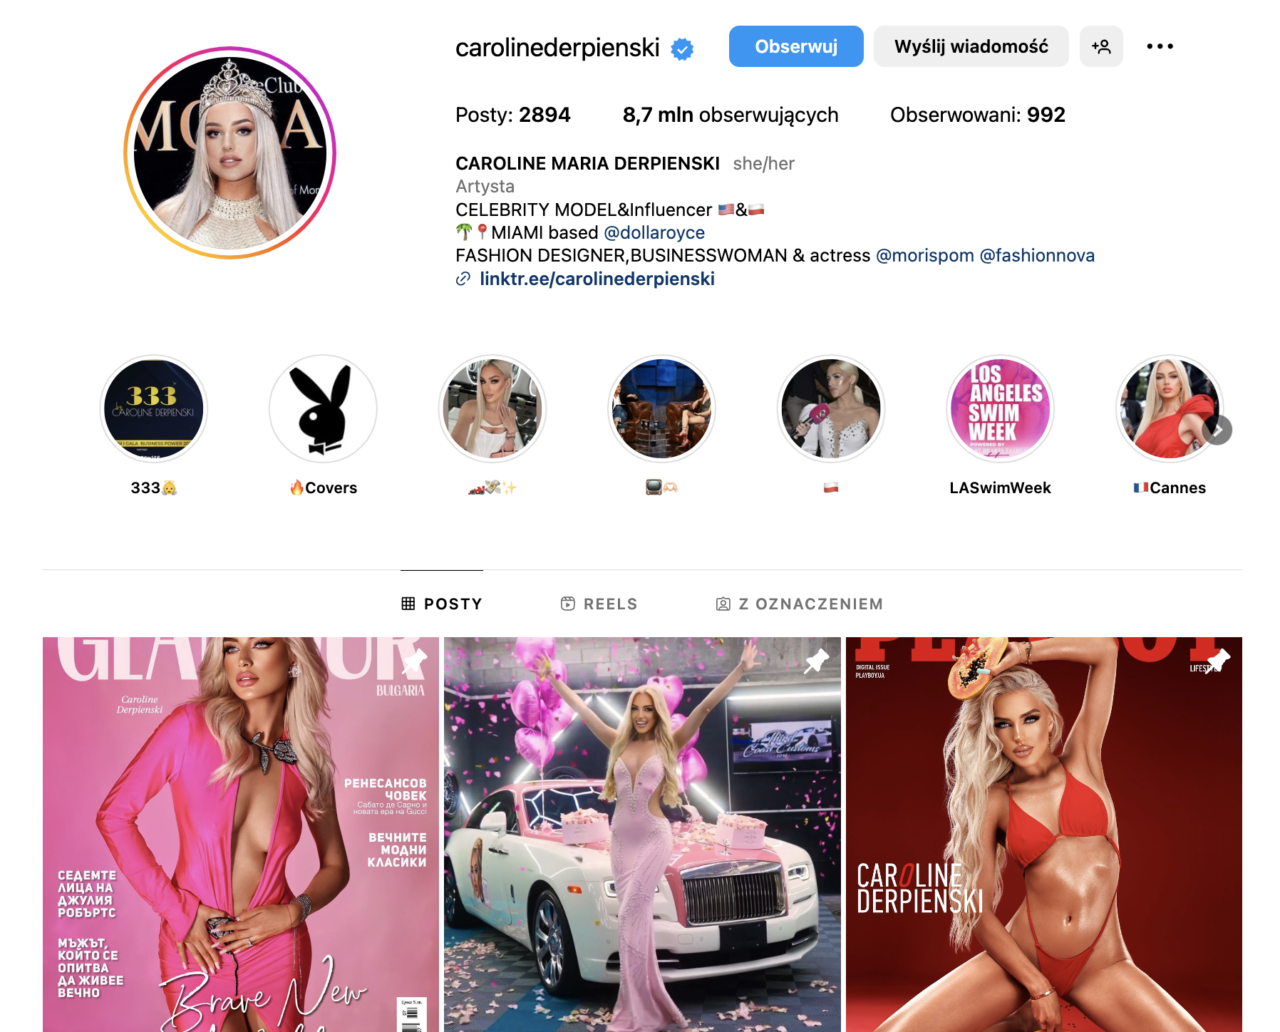 Zrzut ekranu profilu na Instagramie należącego do osoby publicznej z profilowym zdjęciem, informacjami o liczbie postów, obserwujących, obserwowanych oraz opisem profilu. Poniżej znajduje się galeria ze zdjęciami, w tym okładkami magazynów z tą osobą.